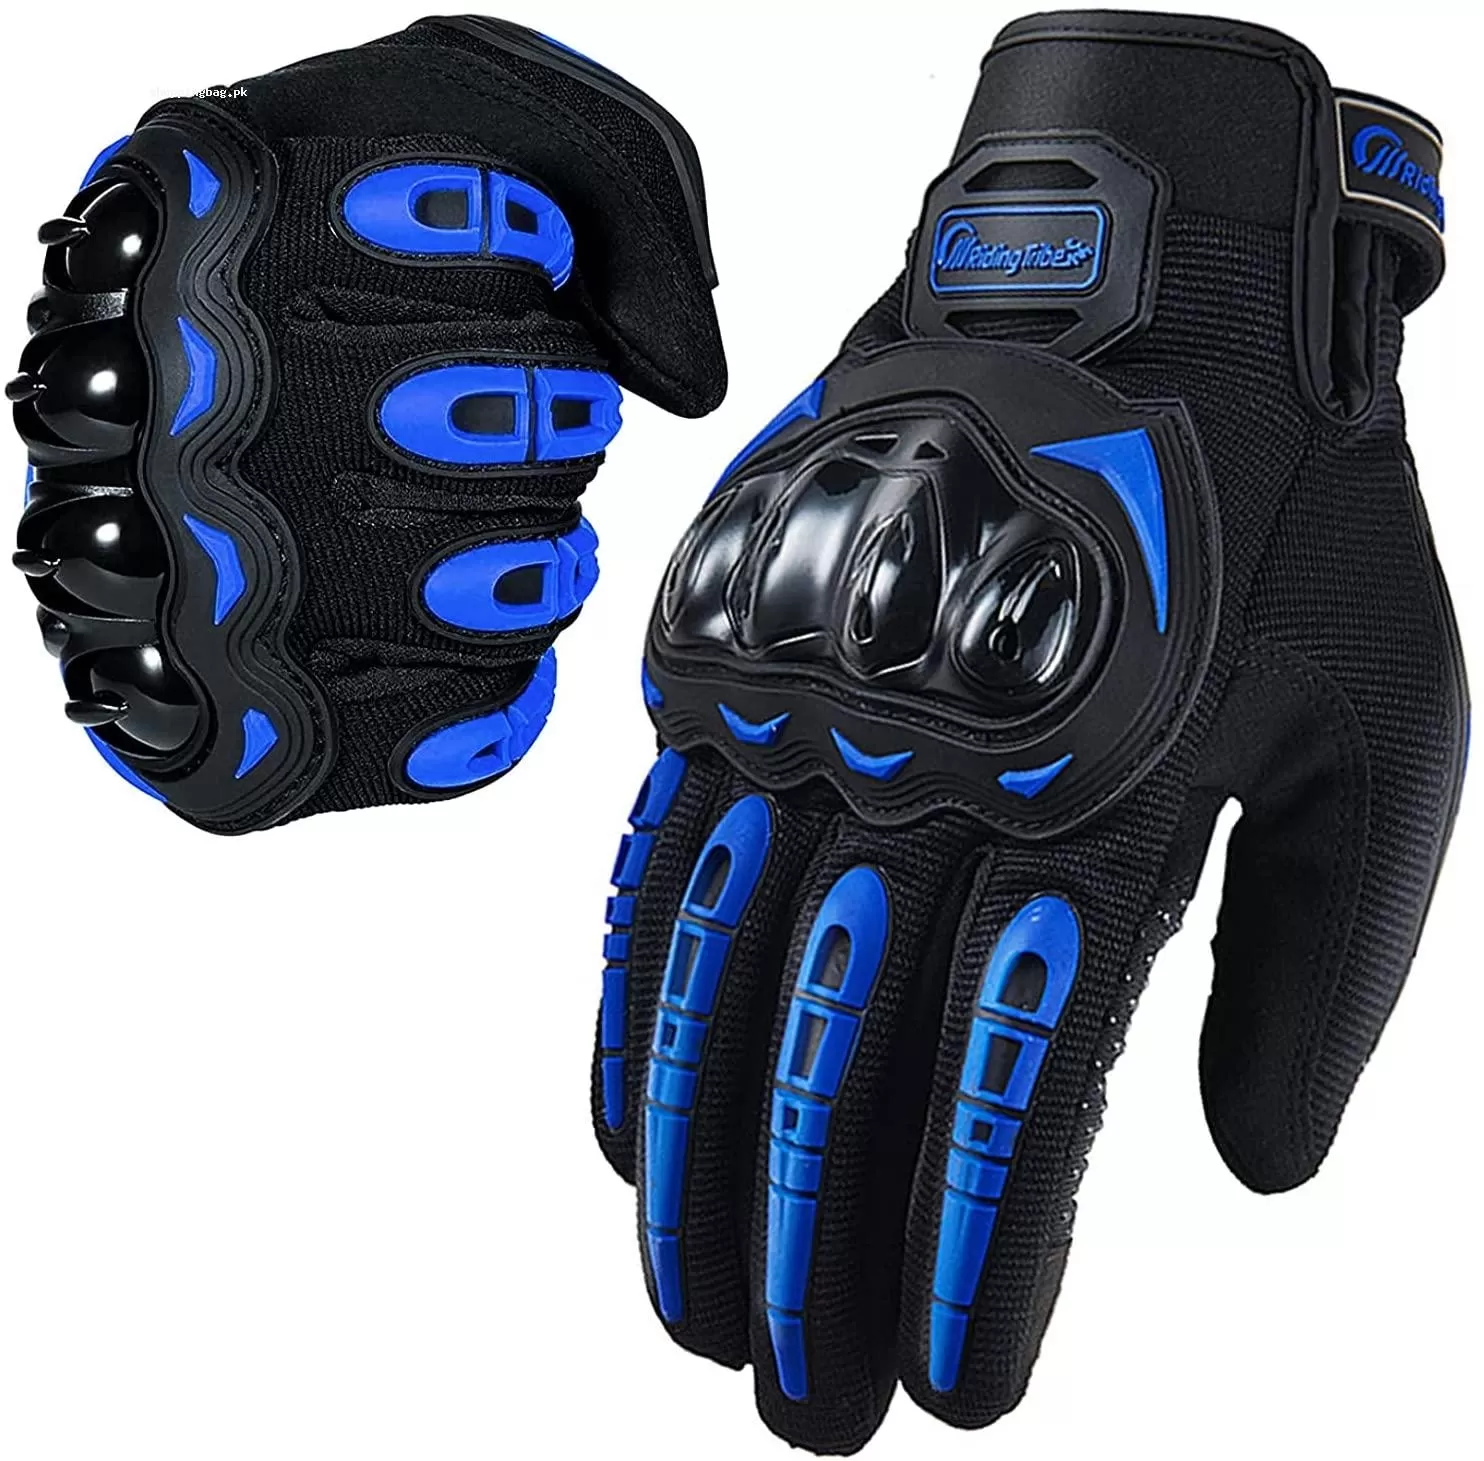 Full Finger Touchscreen Mountain Biking Gloves for Men and Women